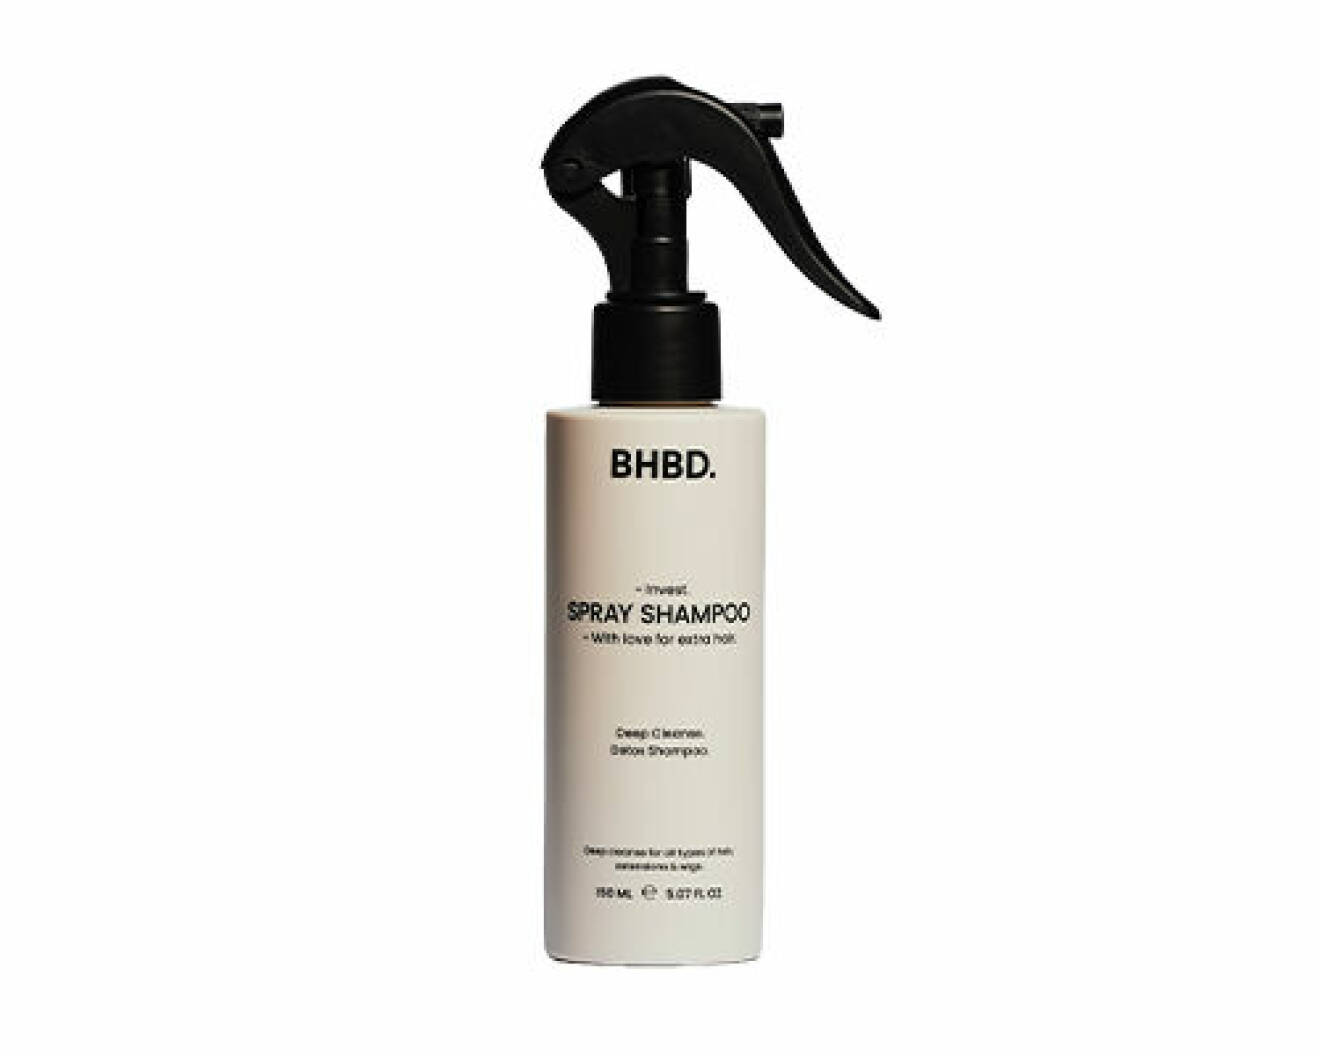 bhbd detox schampo spray